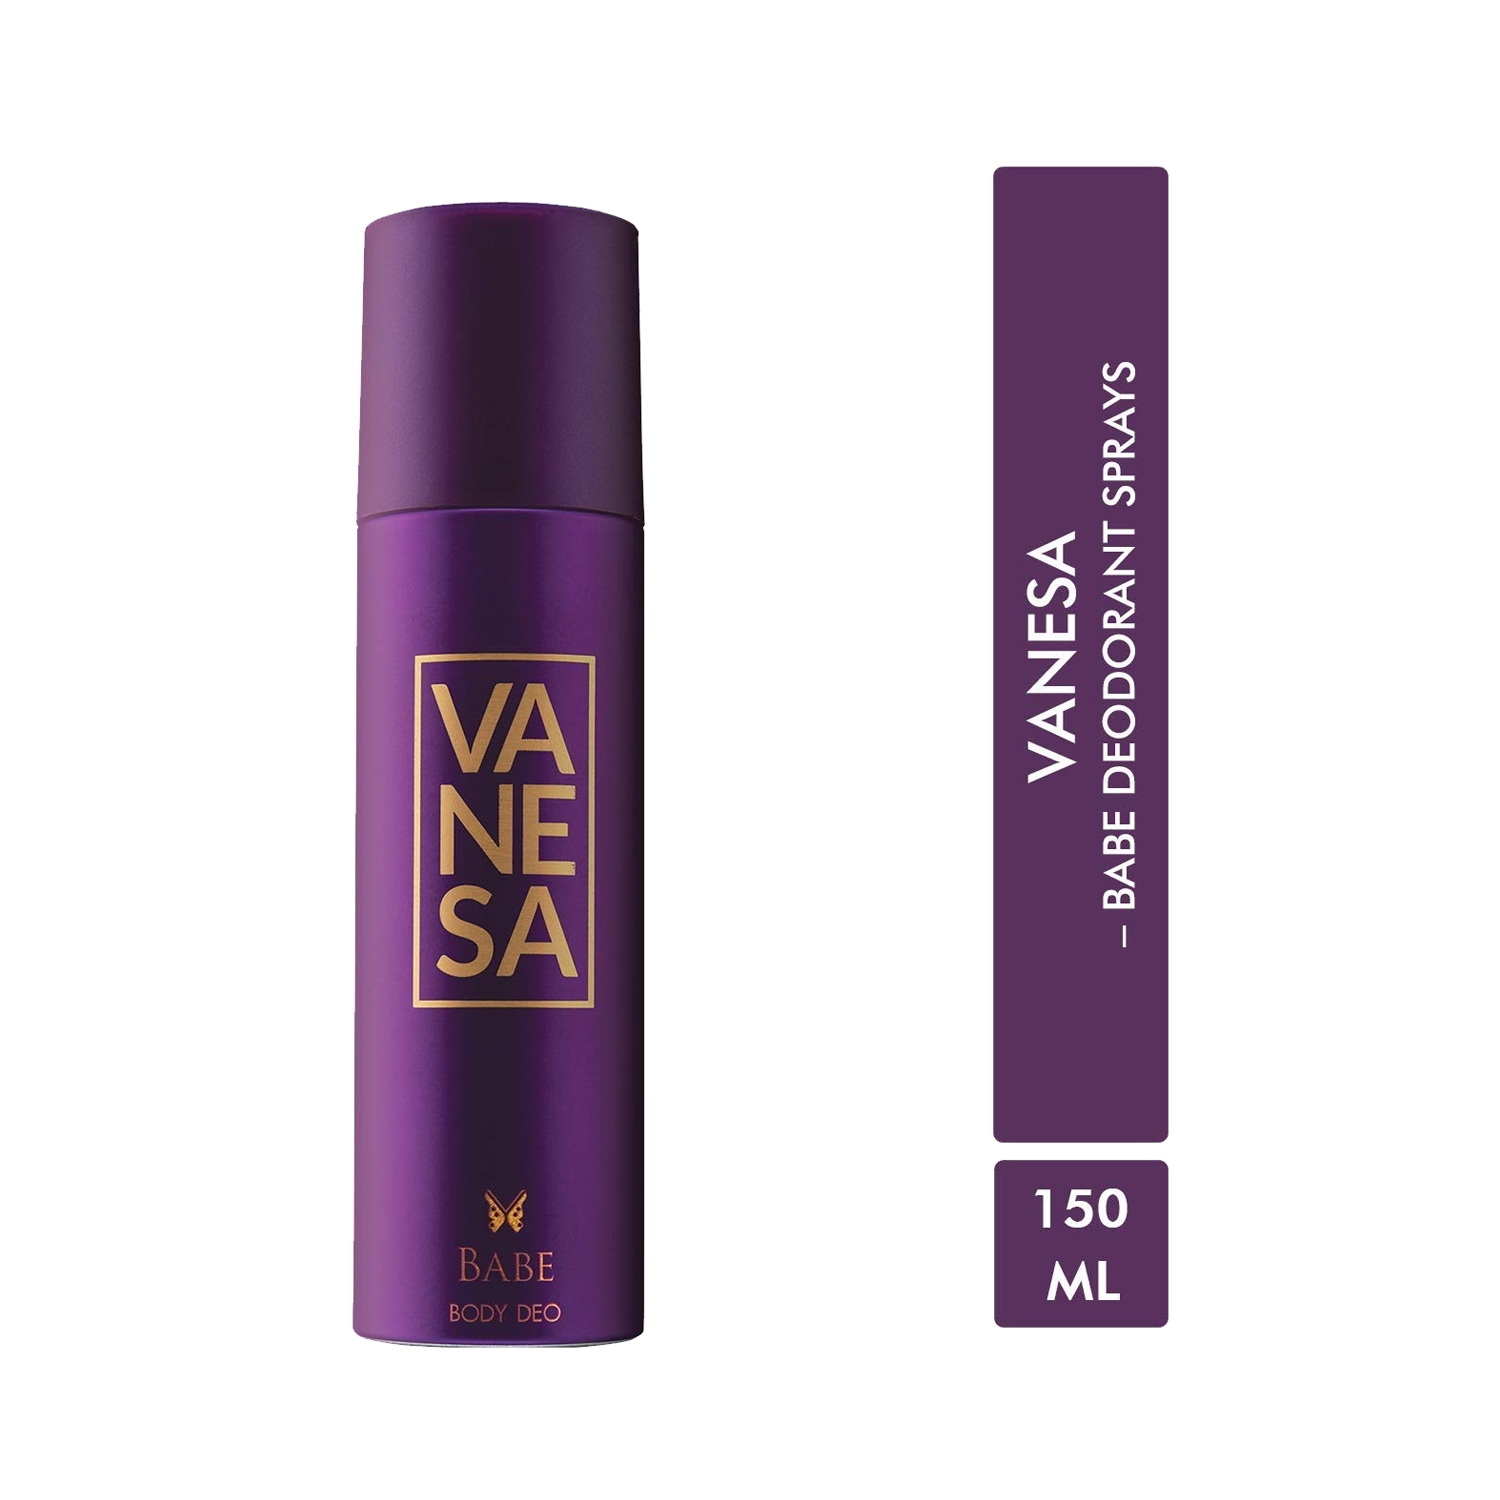 Vanesa | Vanesa Babe Deodorant Body Spray (150ml)